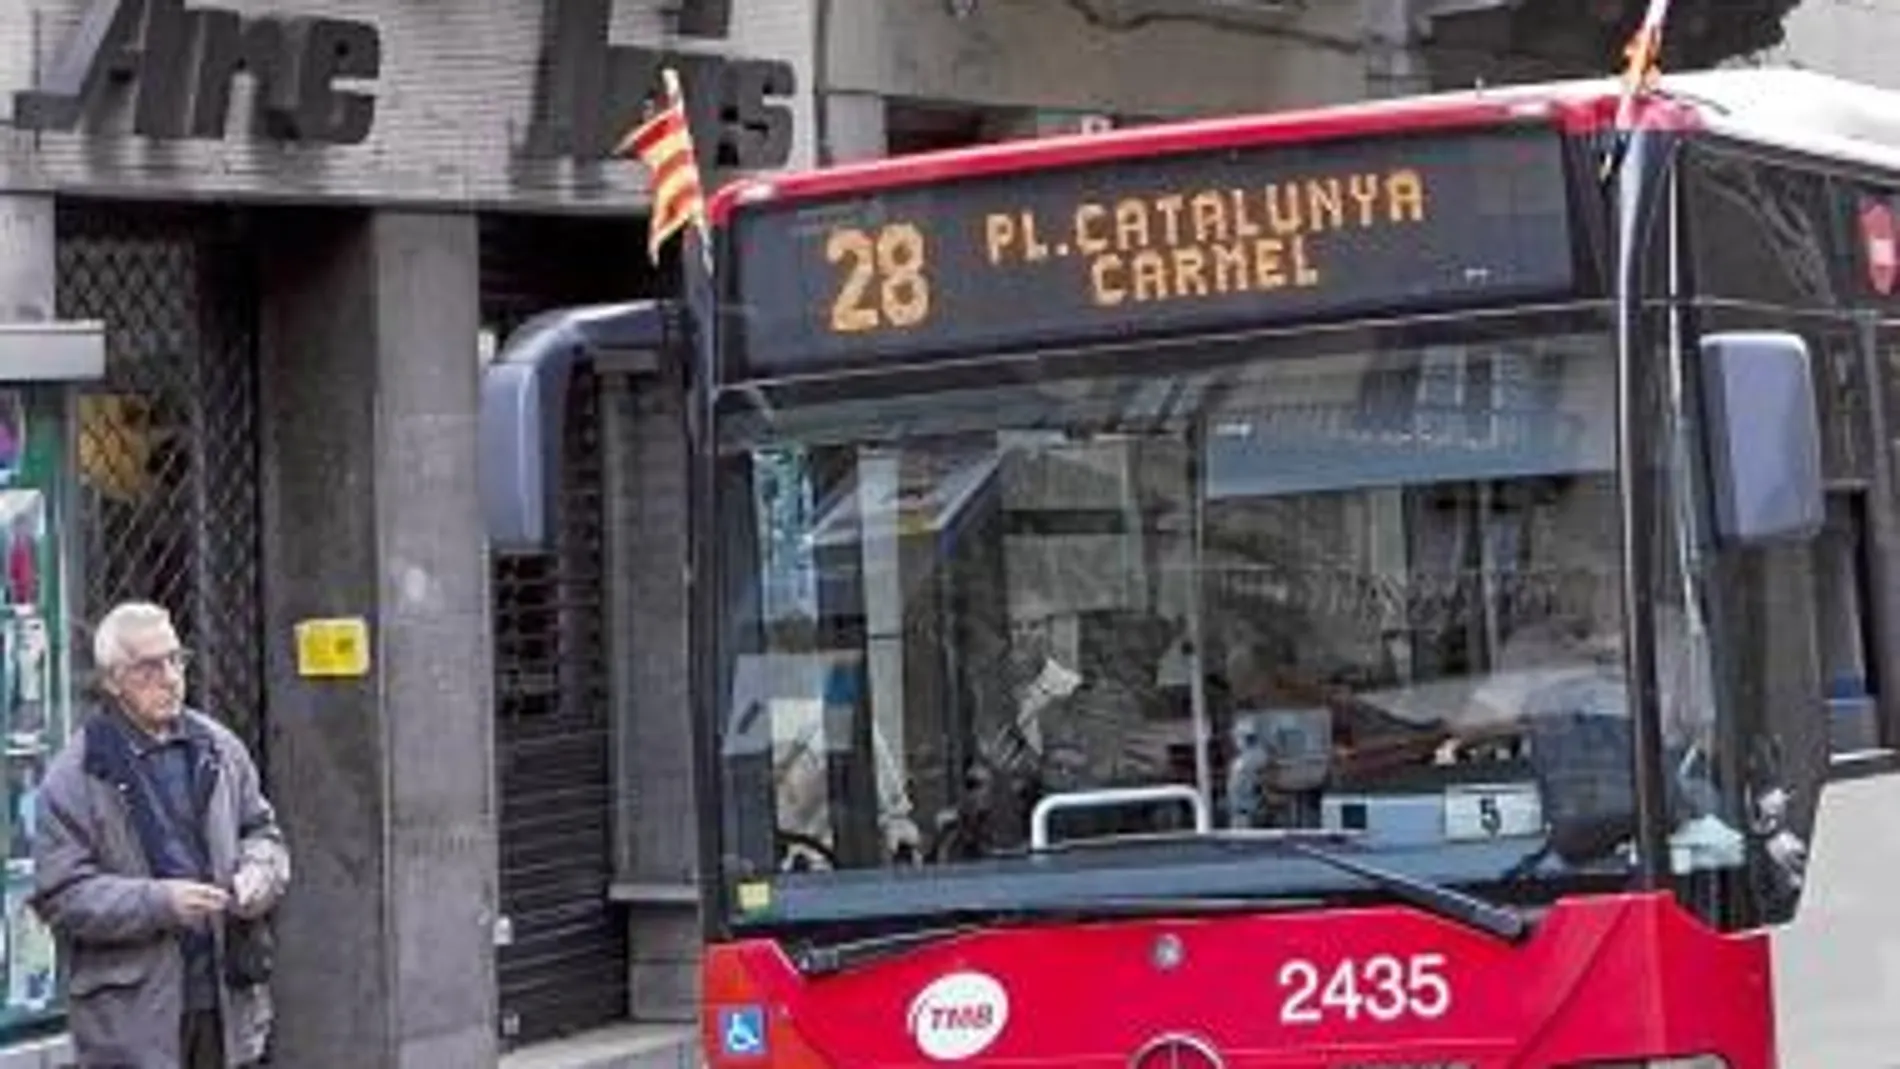 Los buses que celebraron el 32 aniversario de la Constitución no lucieron la bandera española, sí la catalana y la barcelonesa